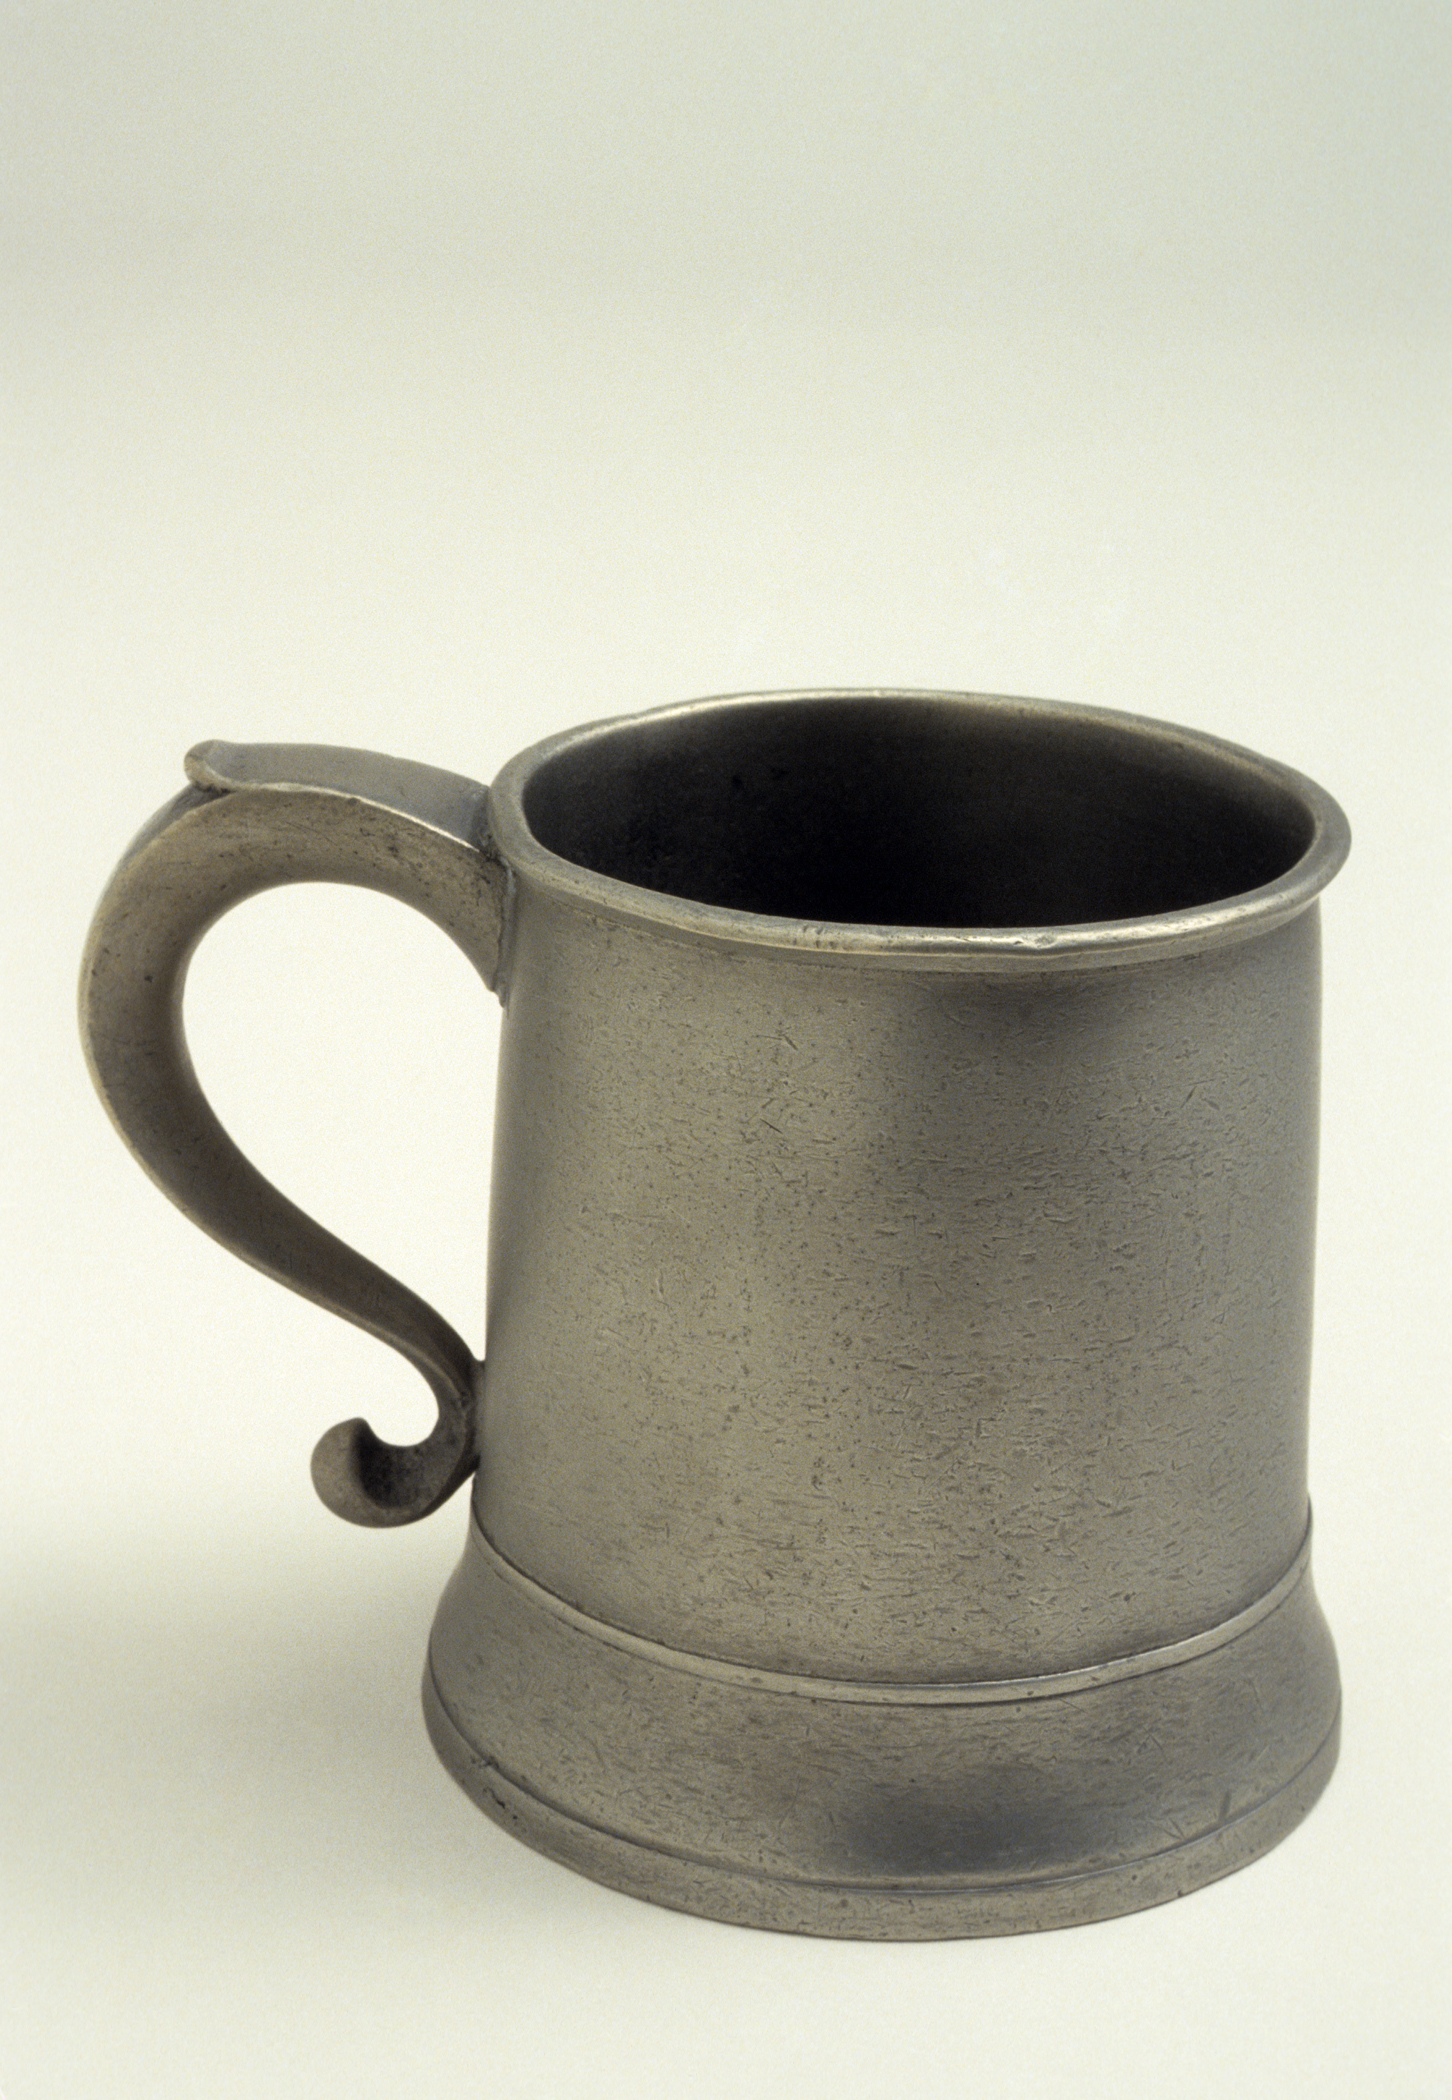 1956.0046.020 Pewter mug